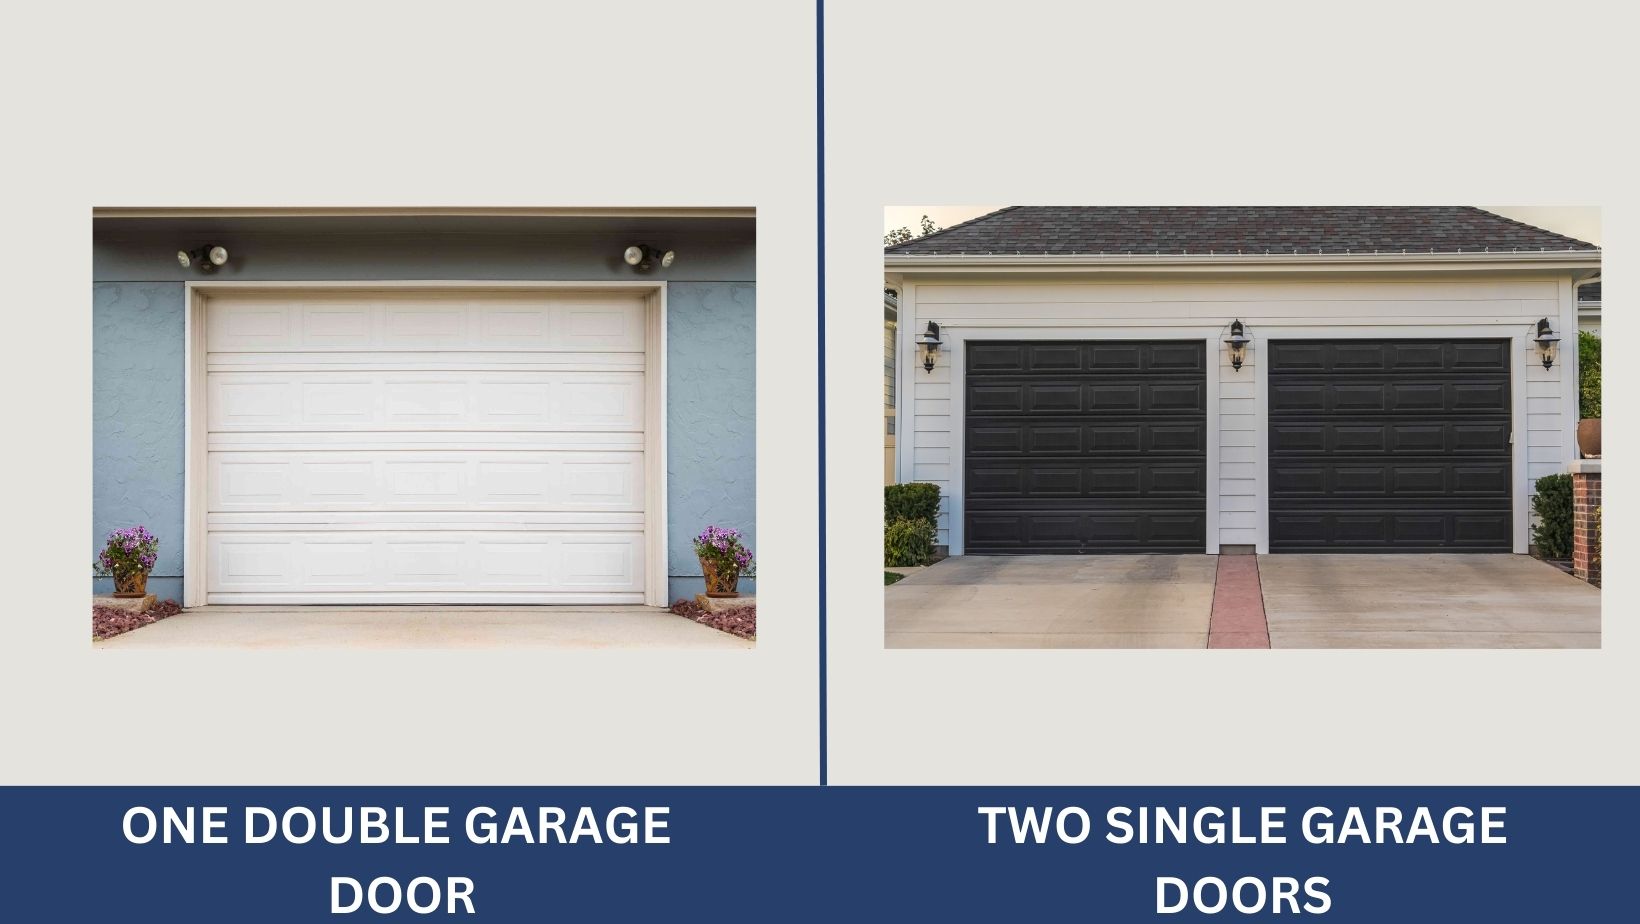 Two Single Garage Doors vs. One Double Garage Door